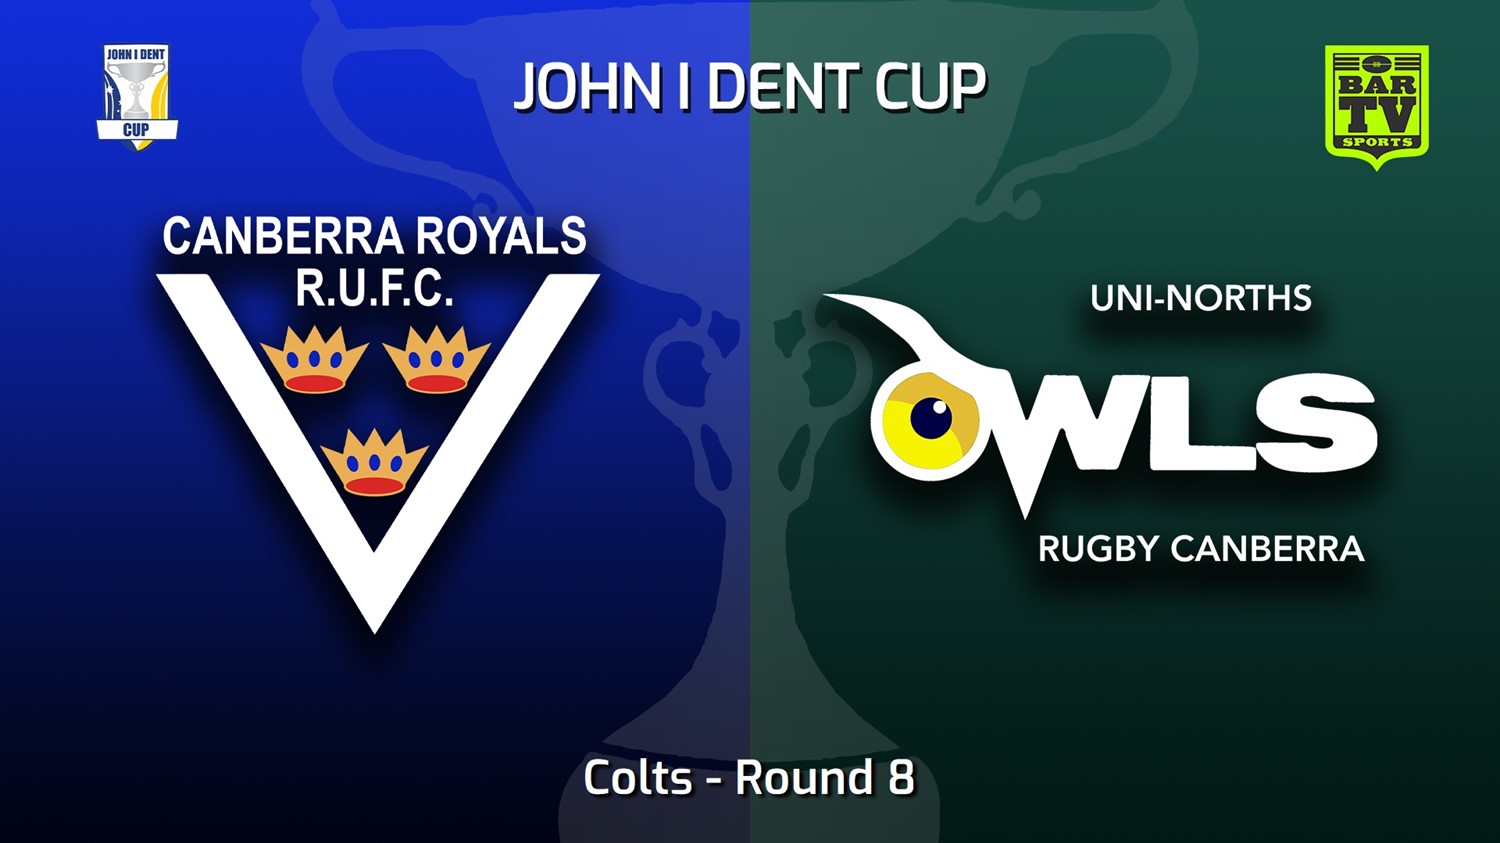 220618-John I Dent (ACT) Round 8 - Colts - Canberra Royals v UNI-Norths Slate Image